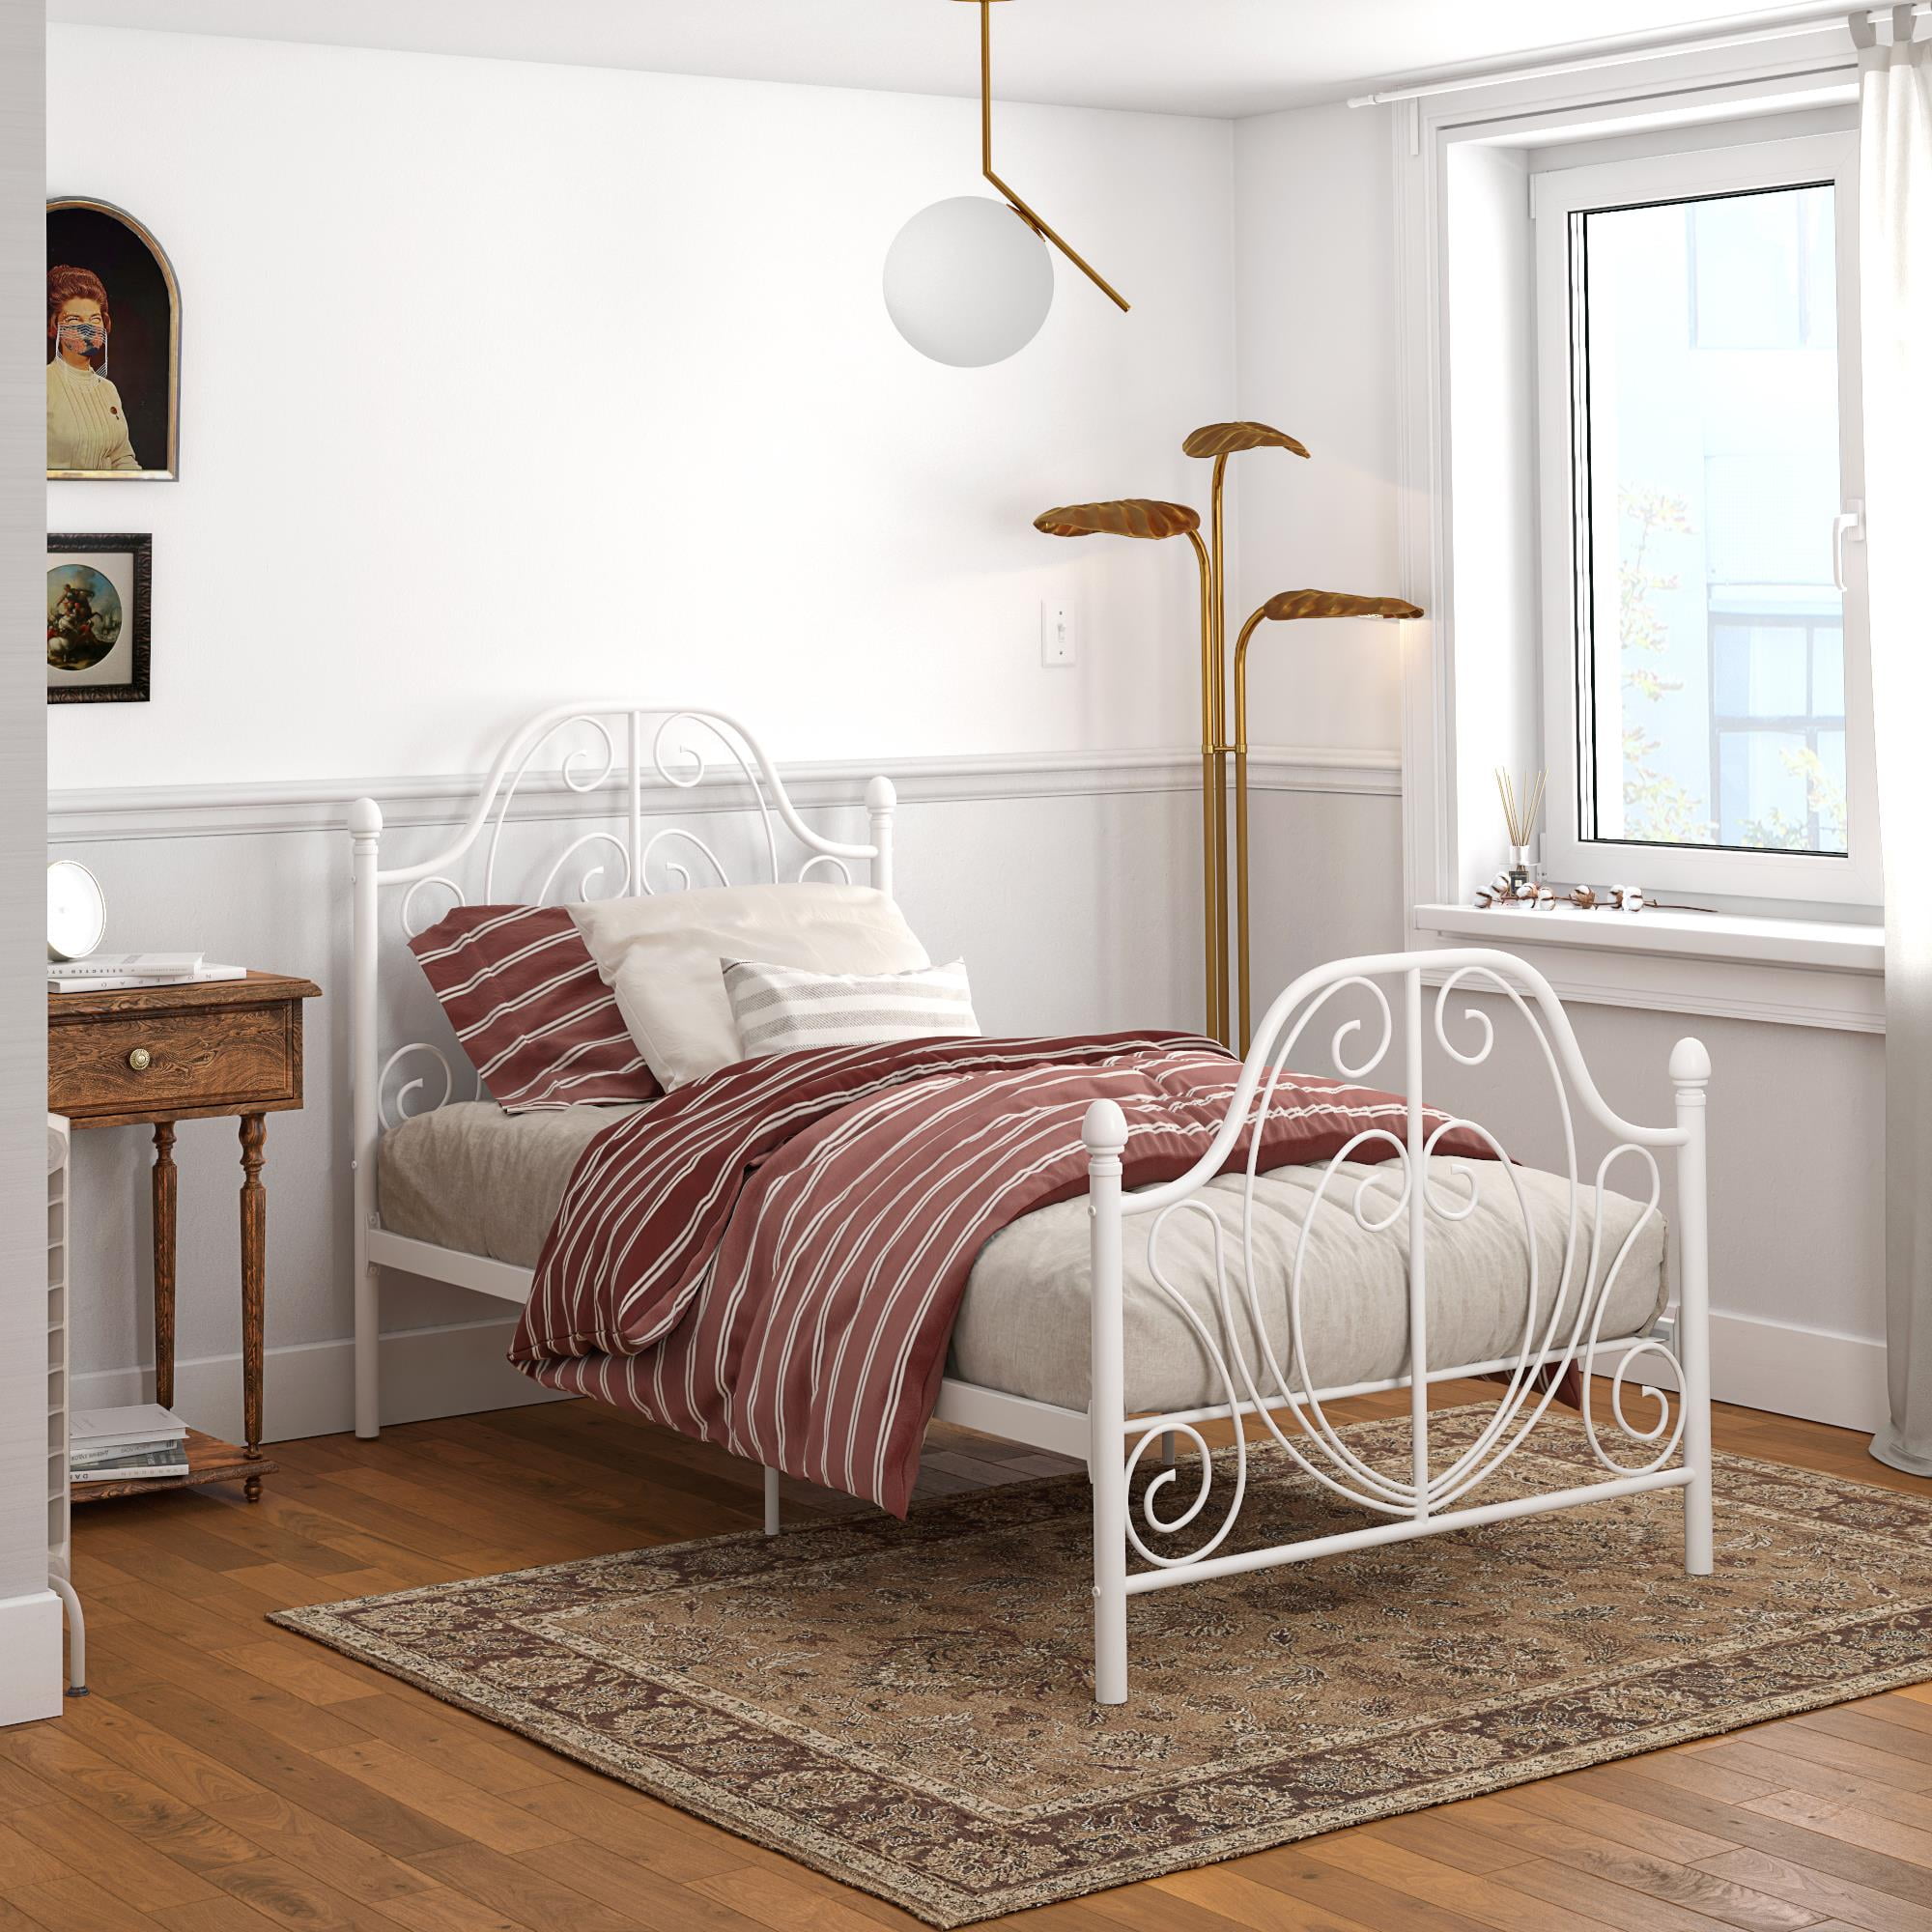 Twin Adjustable Bed Frame - Photos Cantik